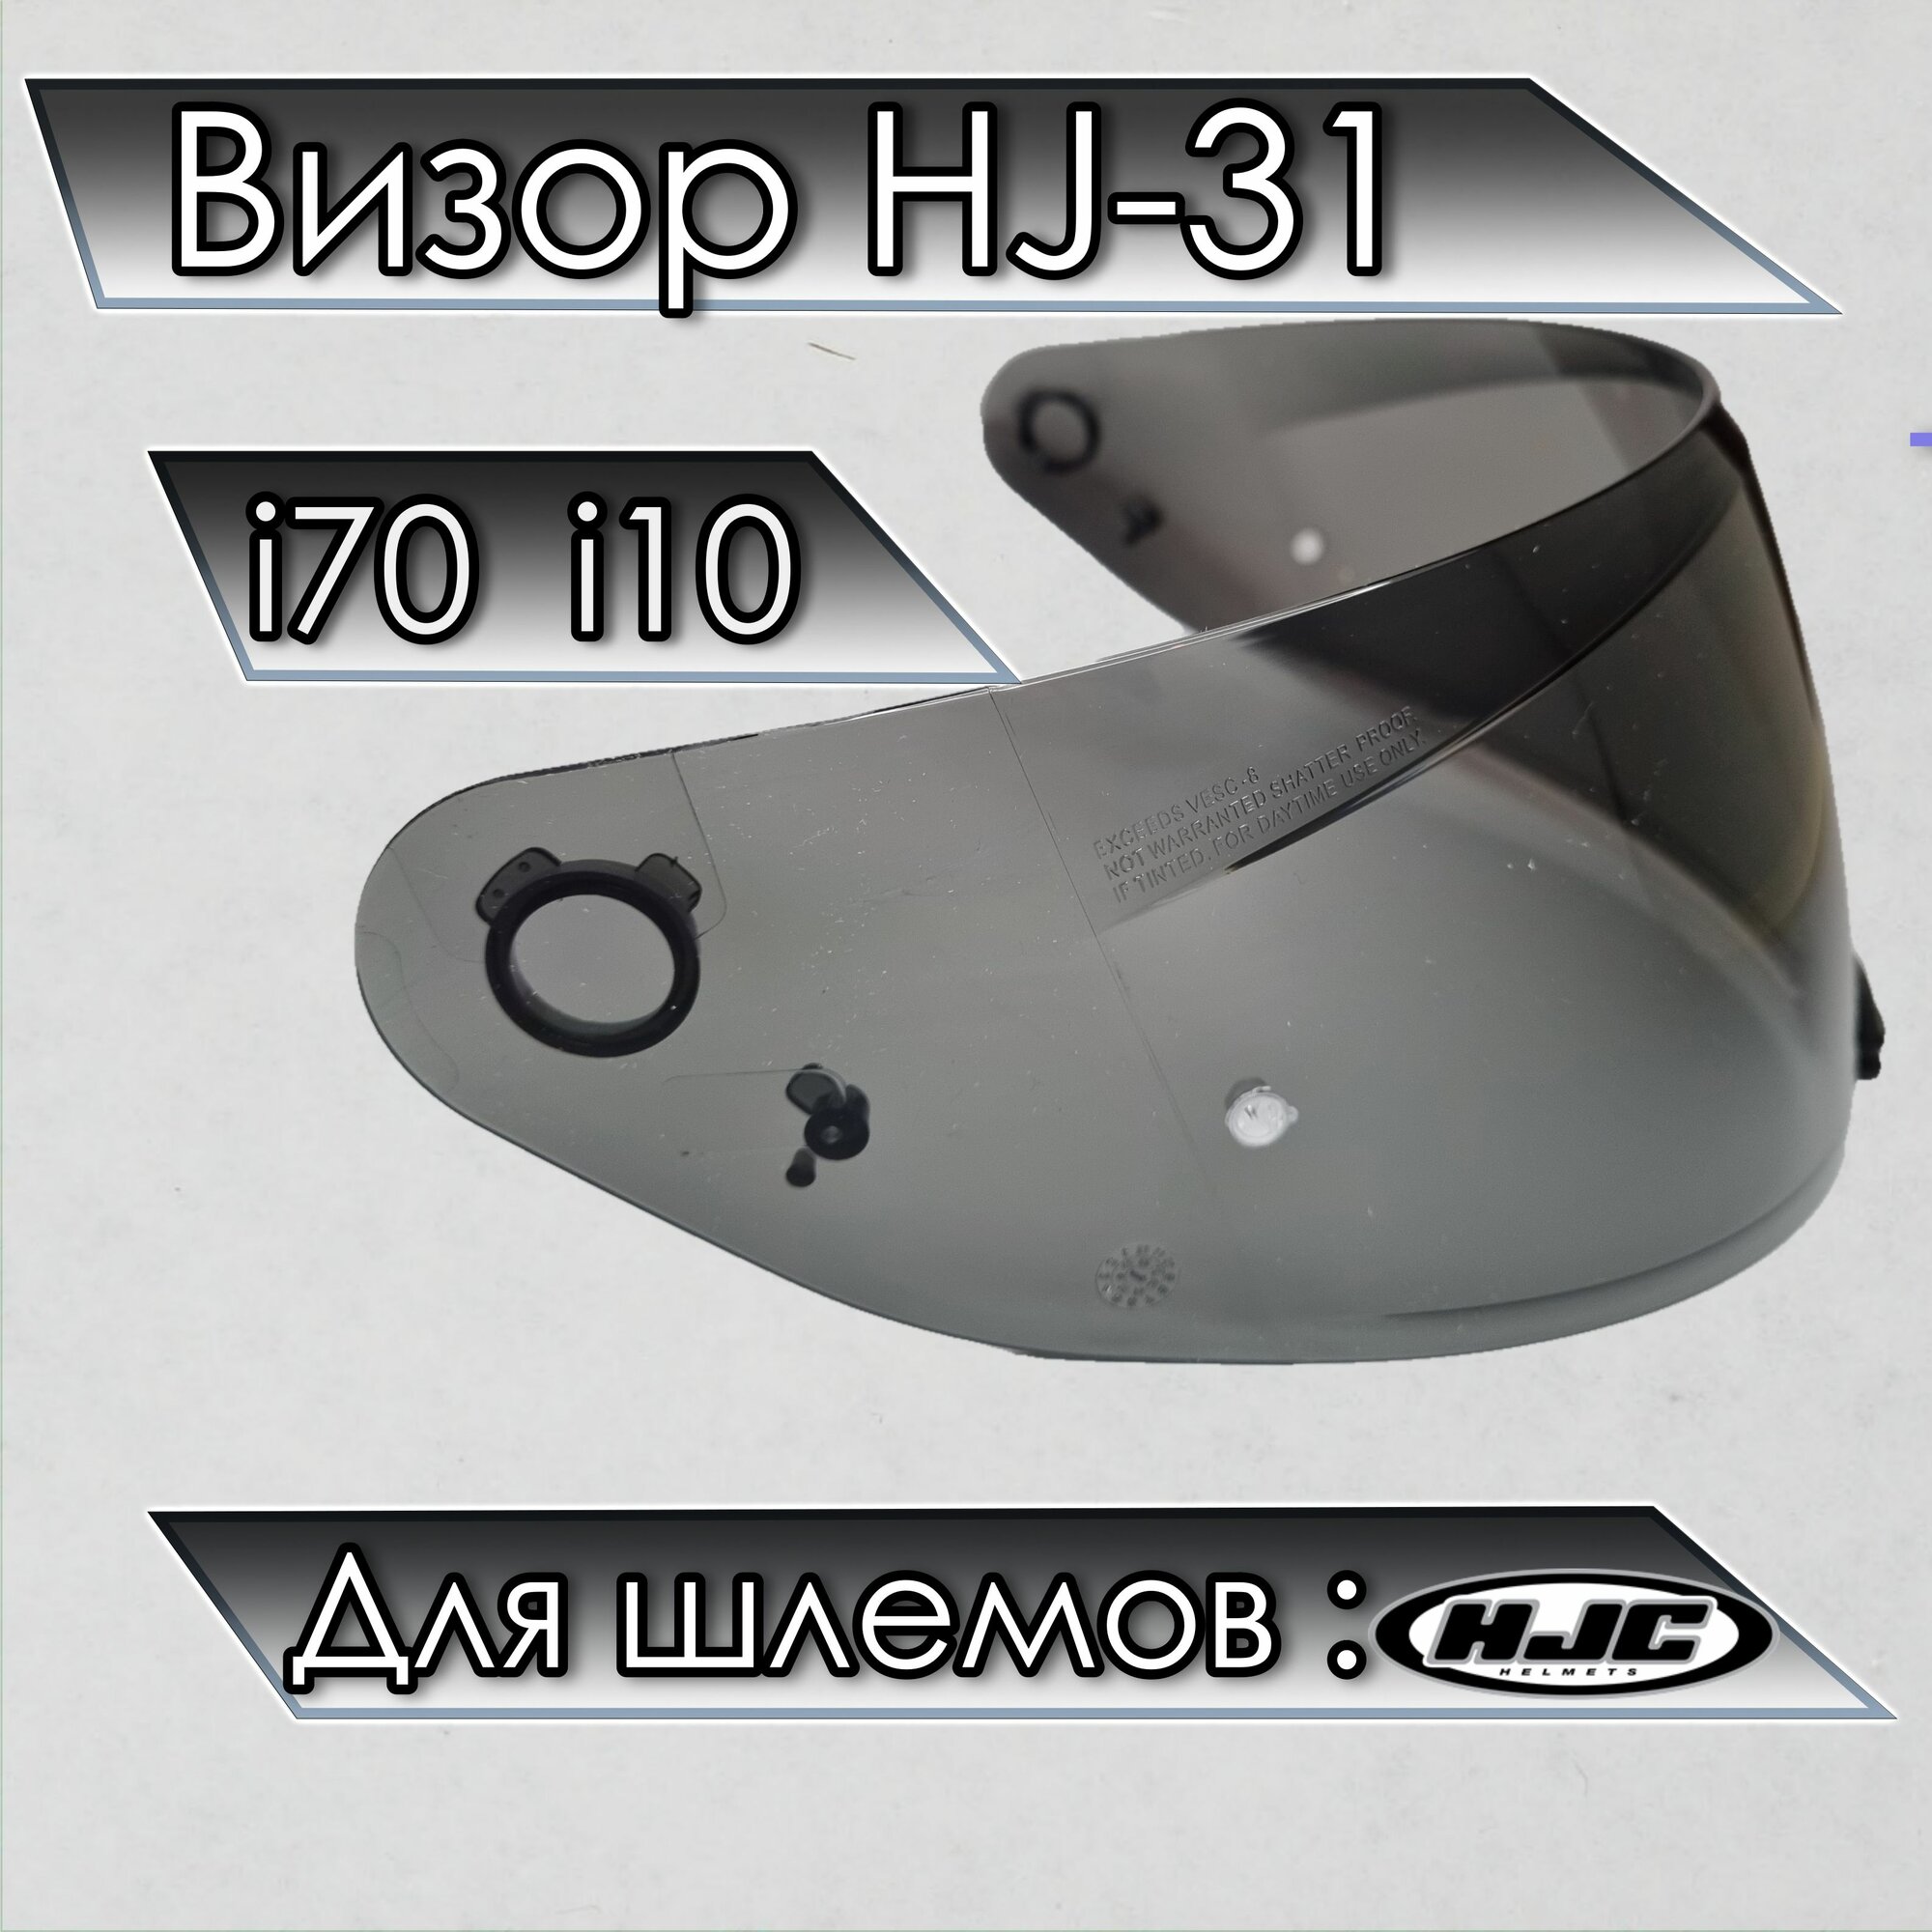 Визор к HJC HJ-31 Для шлемов i70 i10. Черный